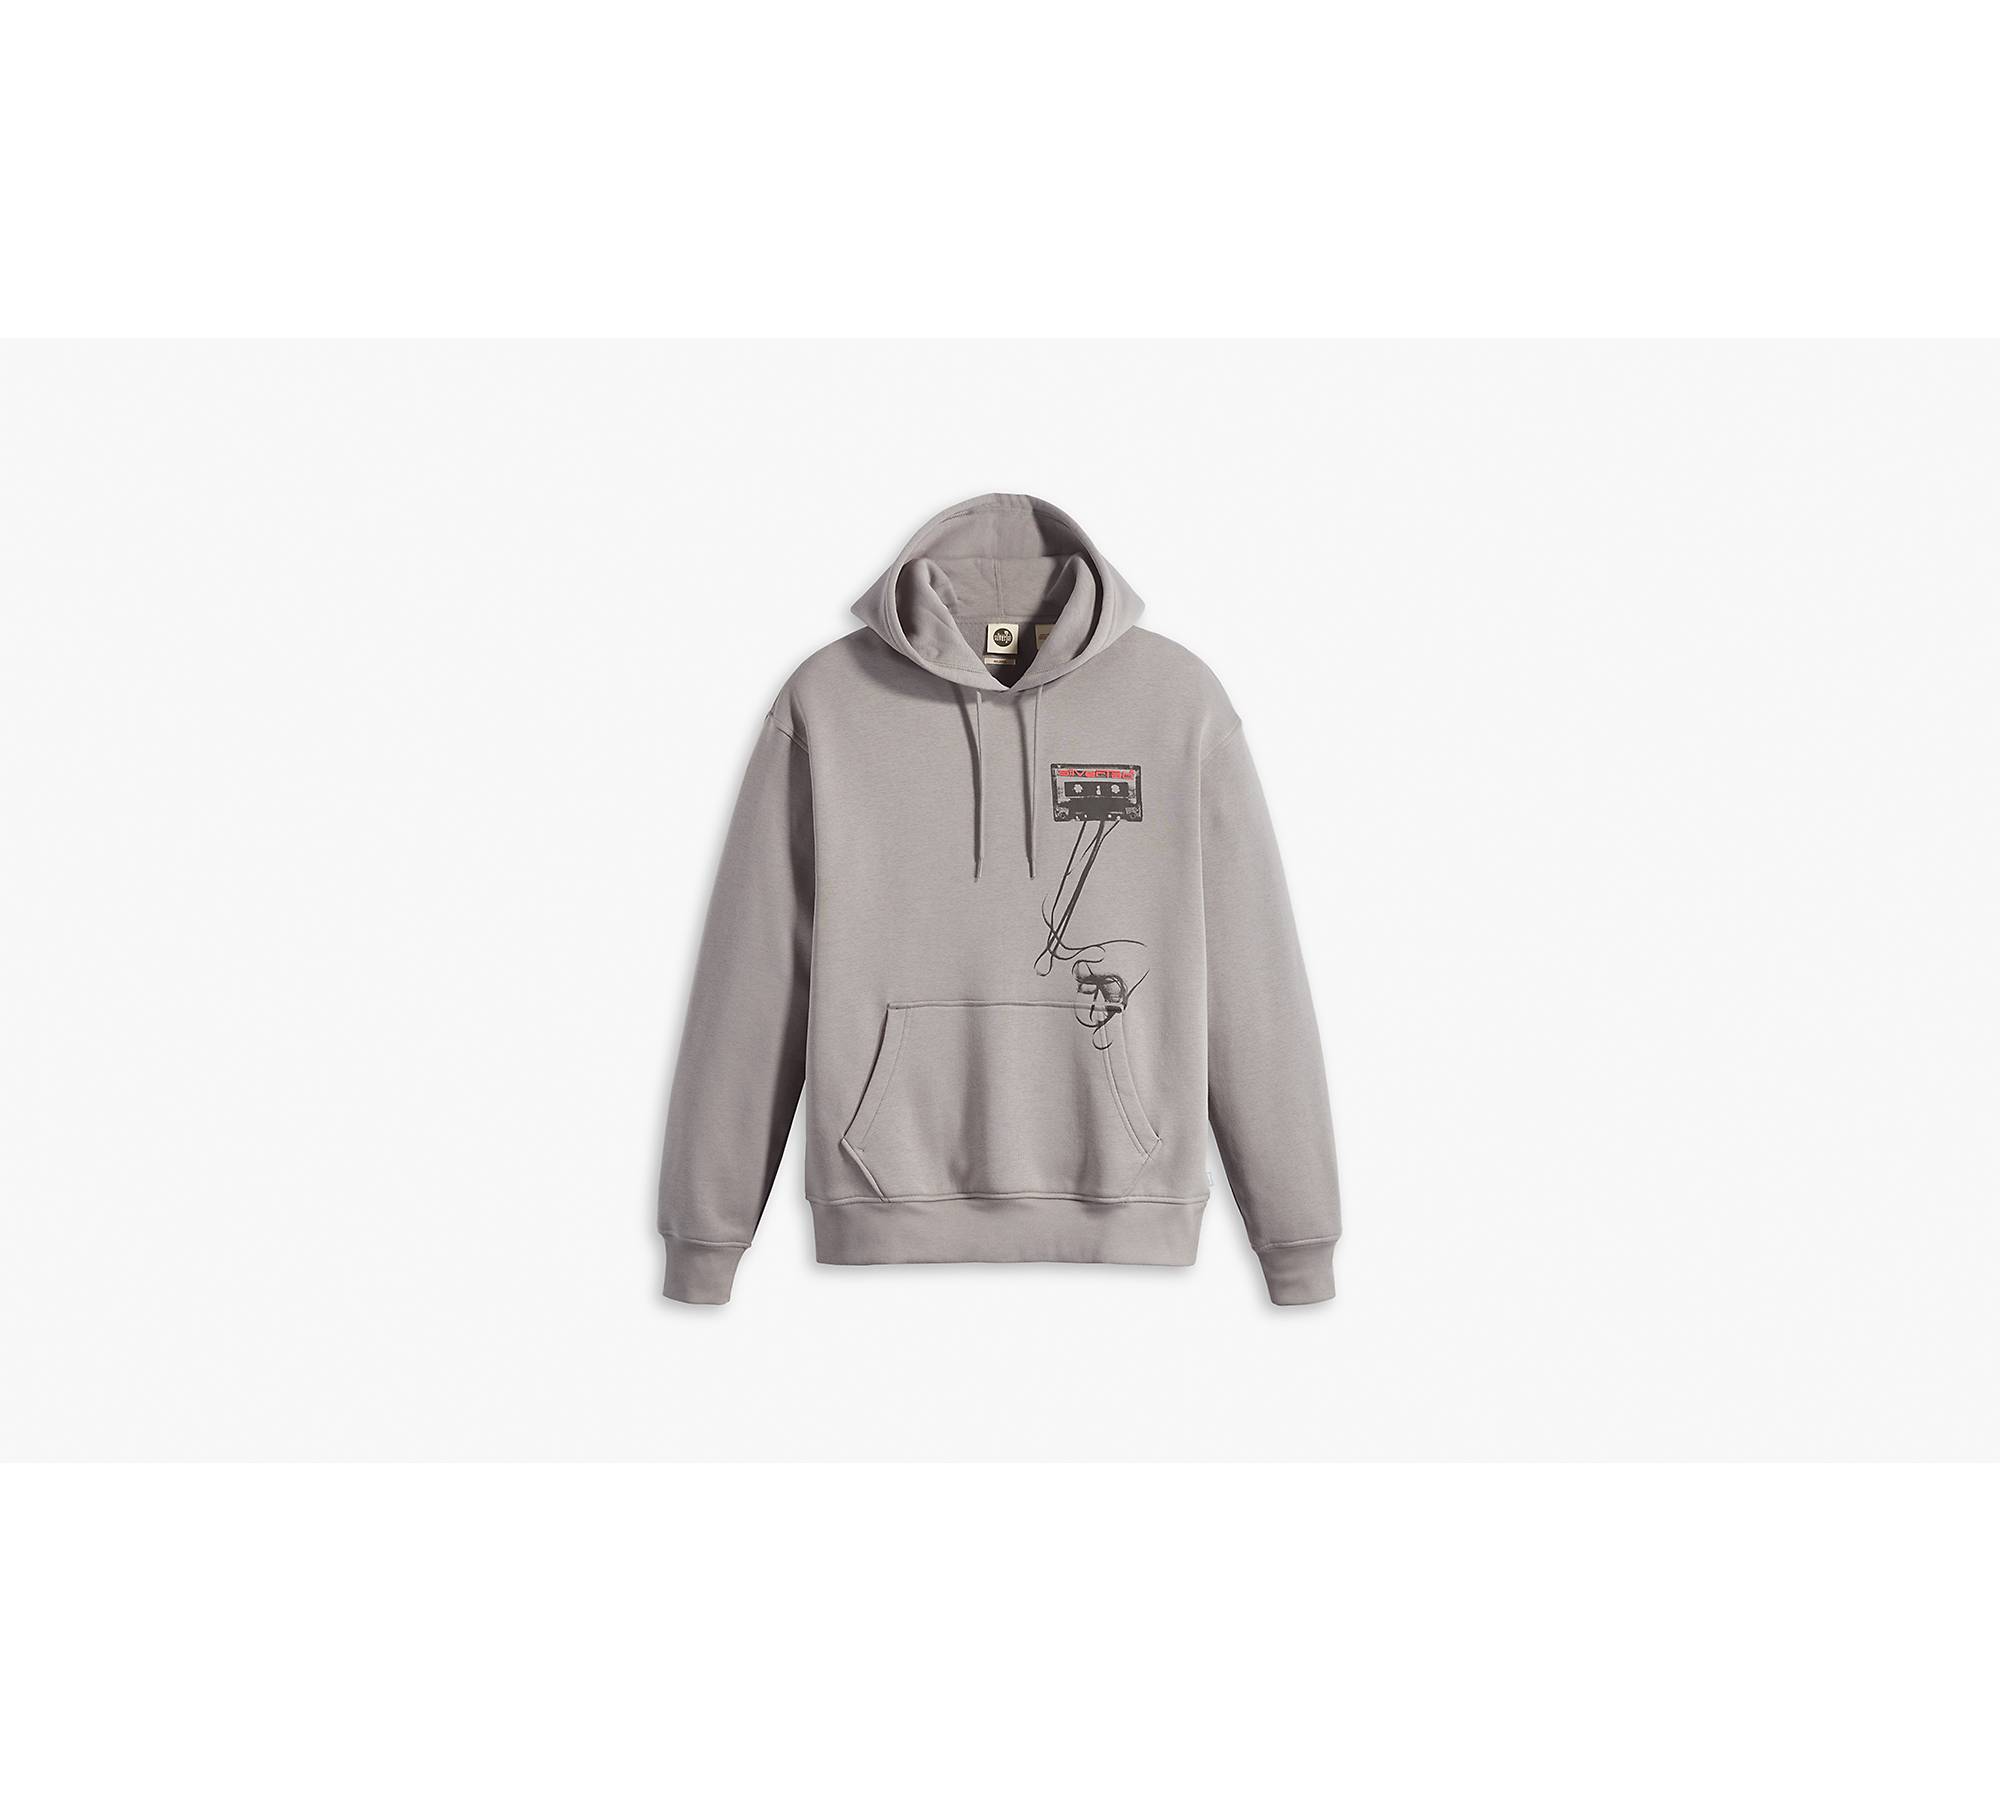 Relaxed Graphic Zip Up Hoodie Sweatshirt - Grey